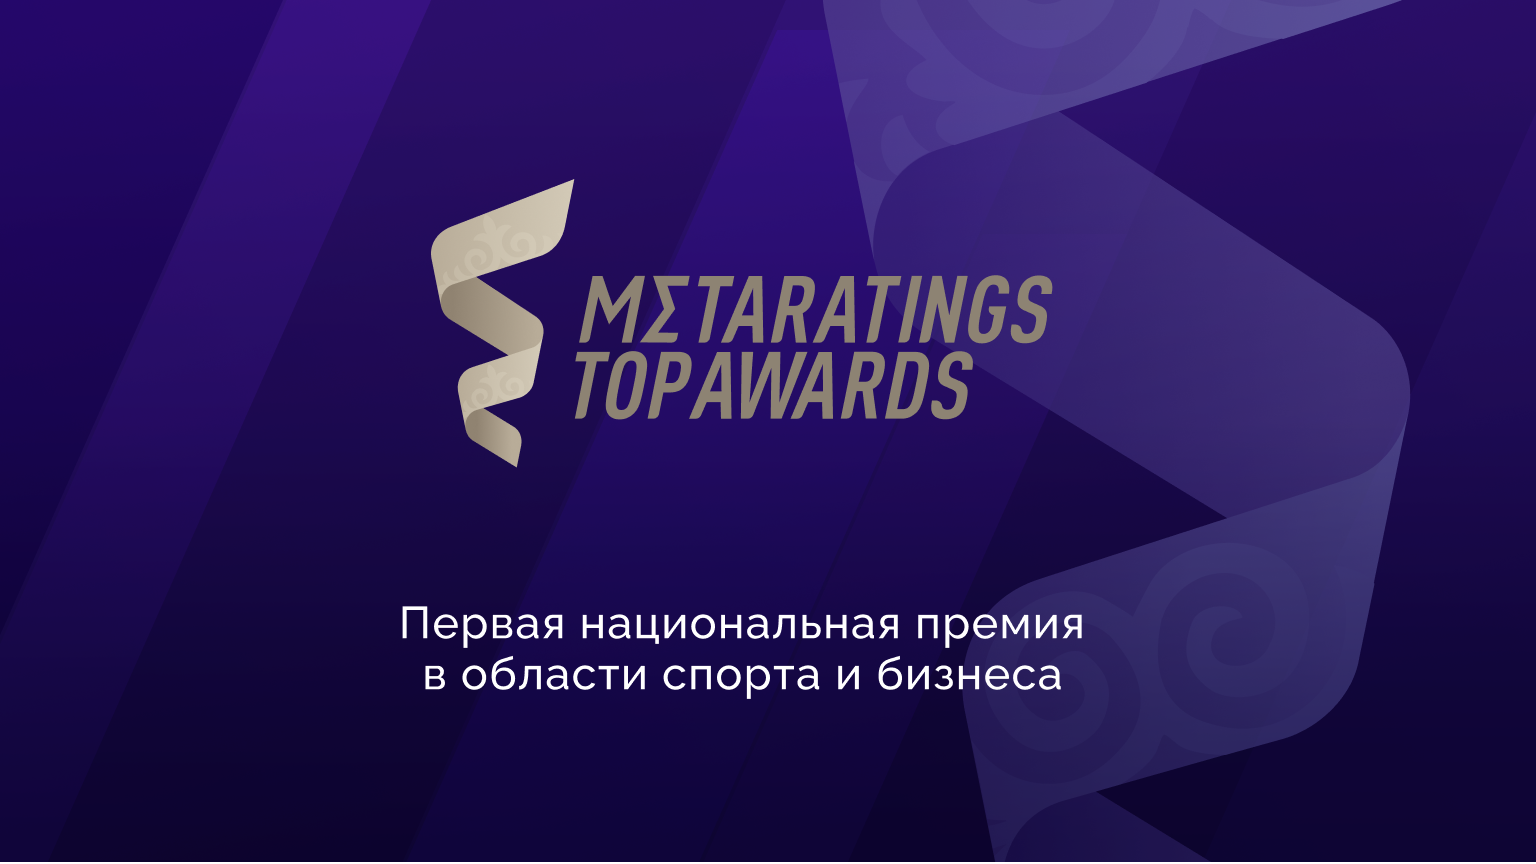 Первая национальная премия в спорте и бизнесе Metaratings Top Awards: за кого и как отдать голос